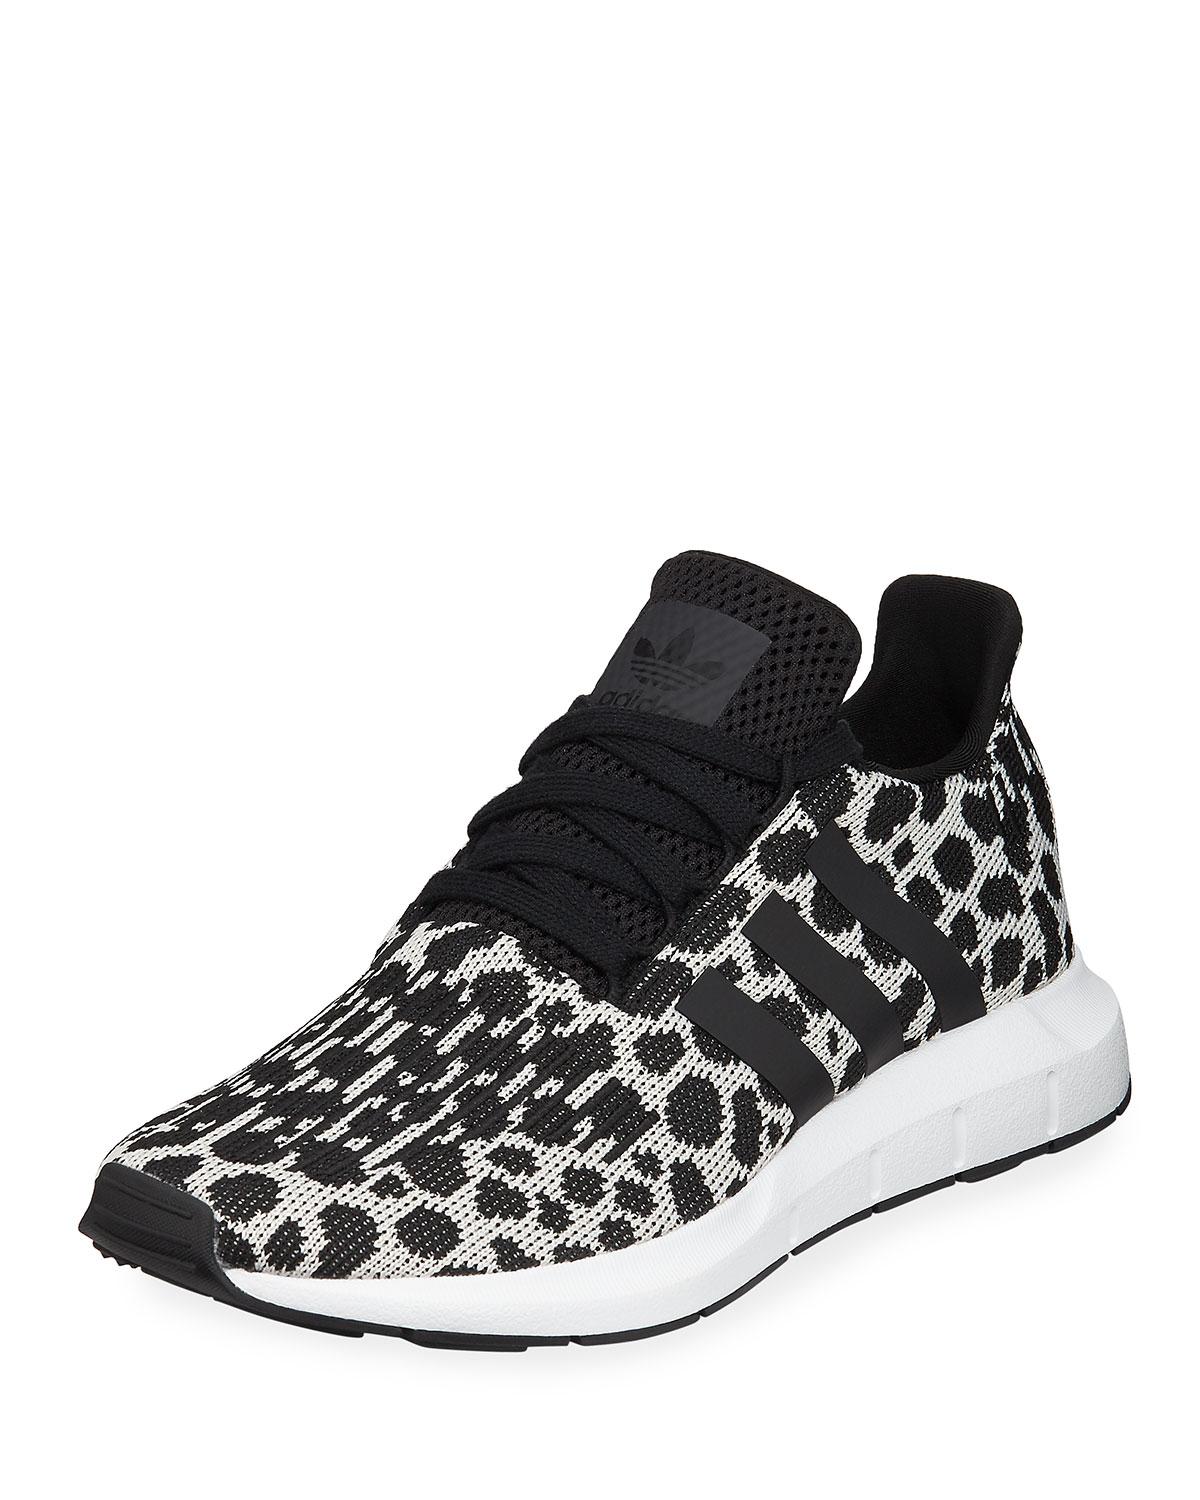 adidas swift run black and white cheetah